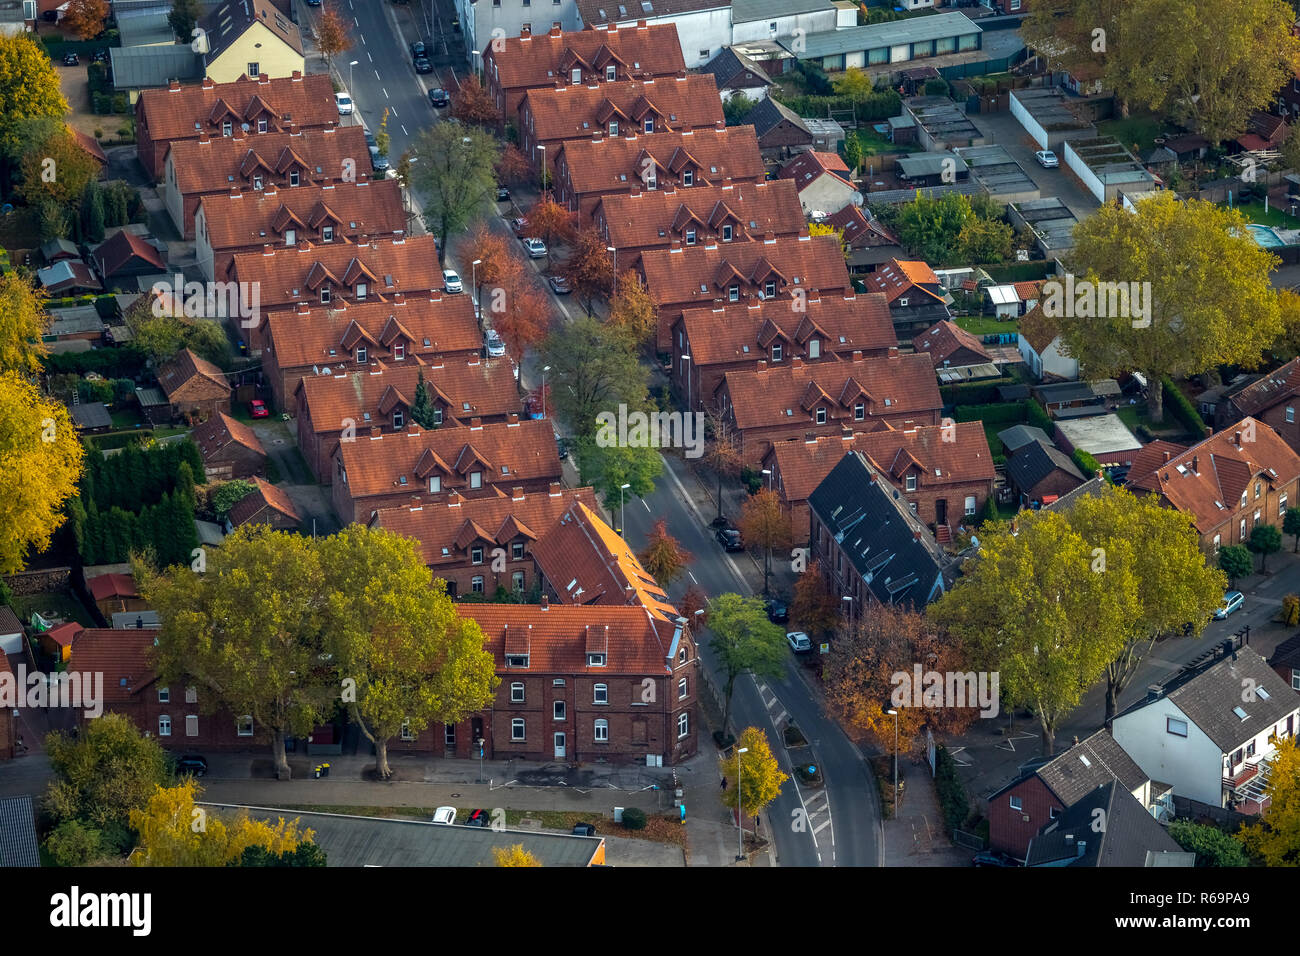 Vue aérienne, les maisons des mineurs, des toits de tuiles rouges, règlement des mineurs, uniforme des maisons, Kirchheller Straße, des toits de tuiles rouges, Gladbeck Banque D'Images